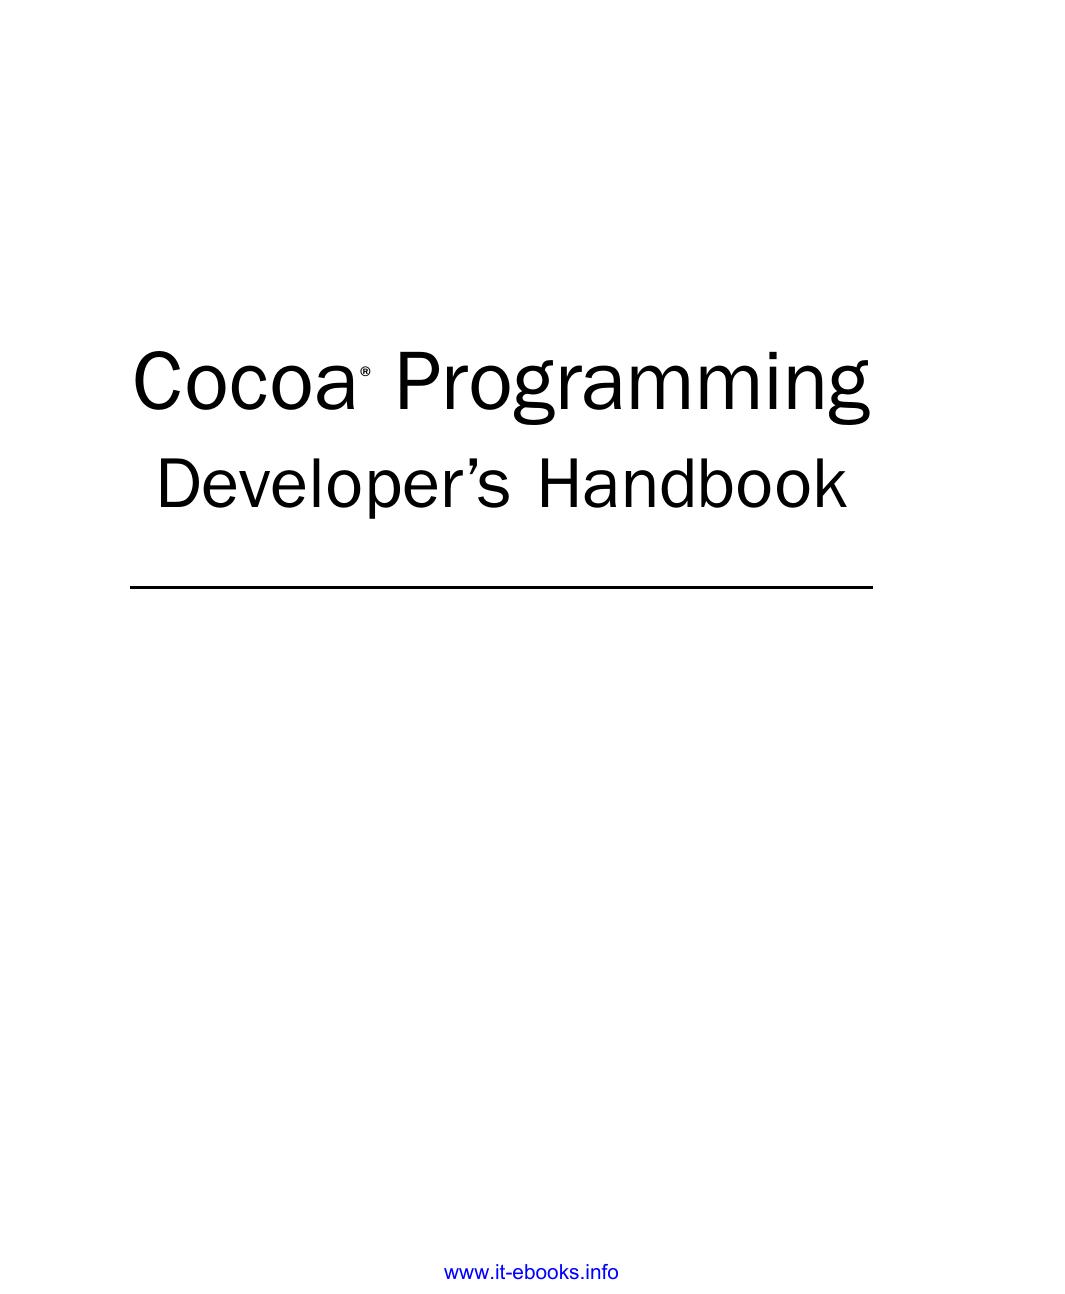 Coacoa Programming develop's handbook